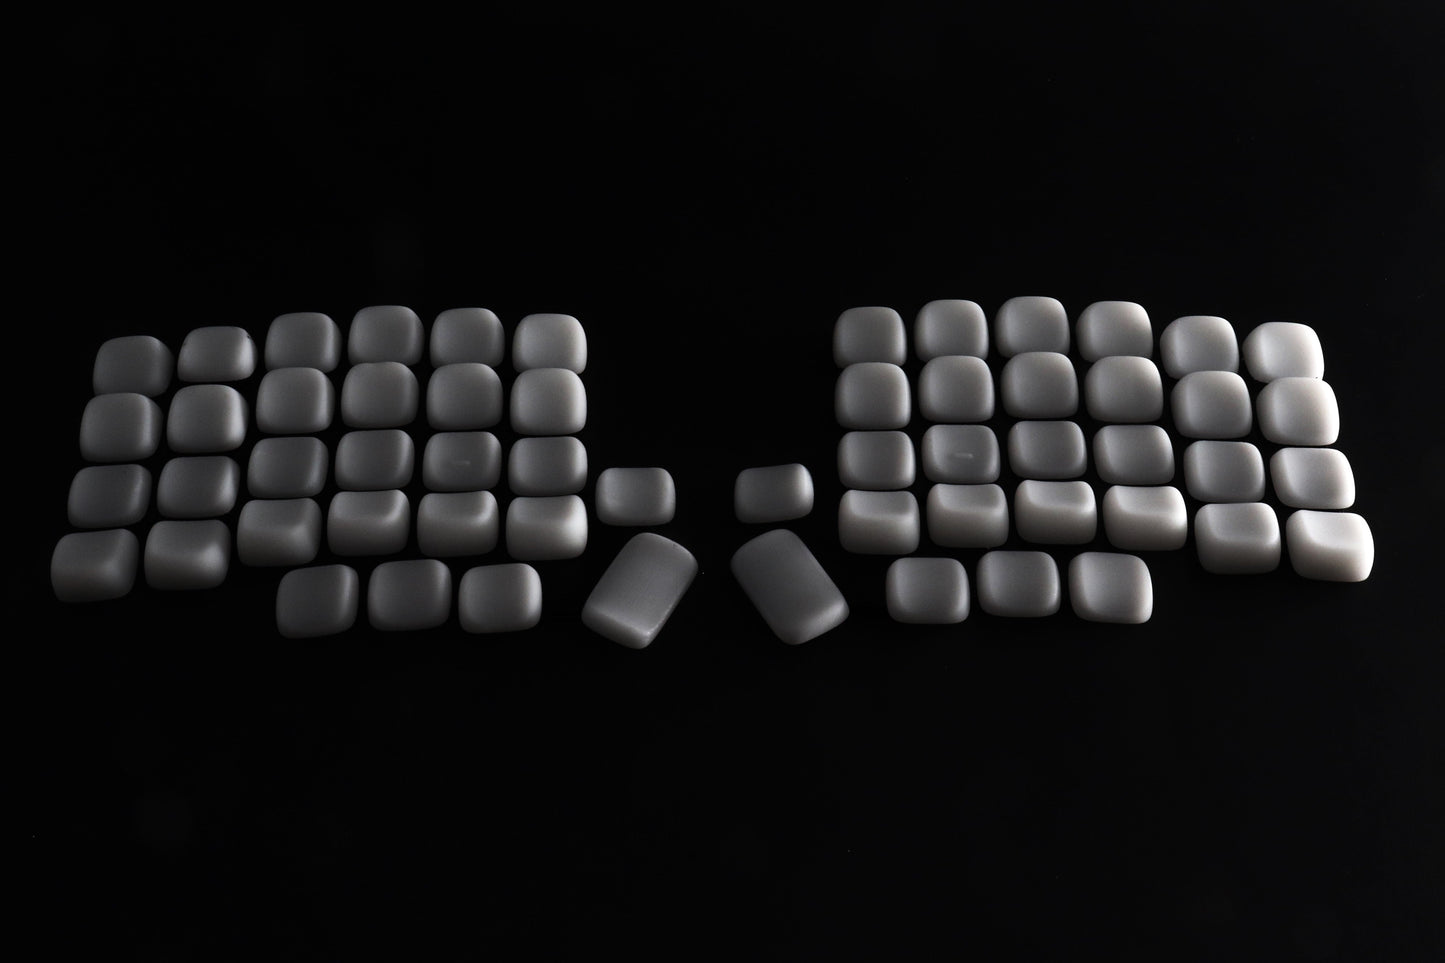 MX-Lame Keycap Set, low profile ergonomic sculpted keycaps